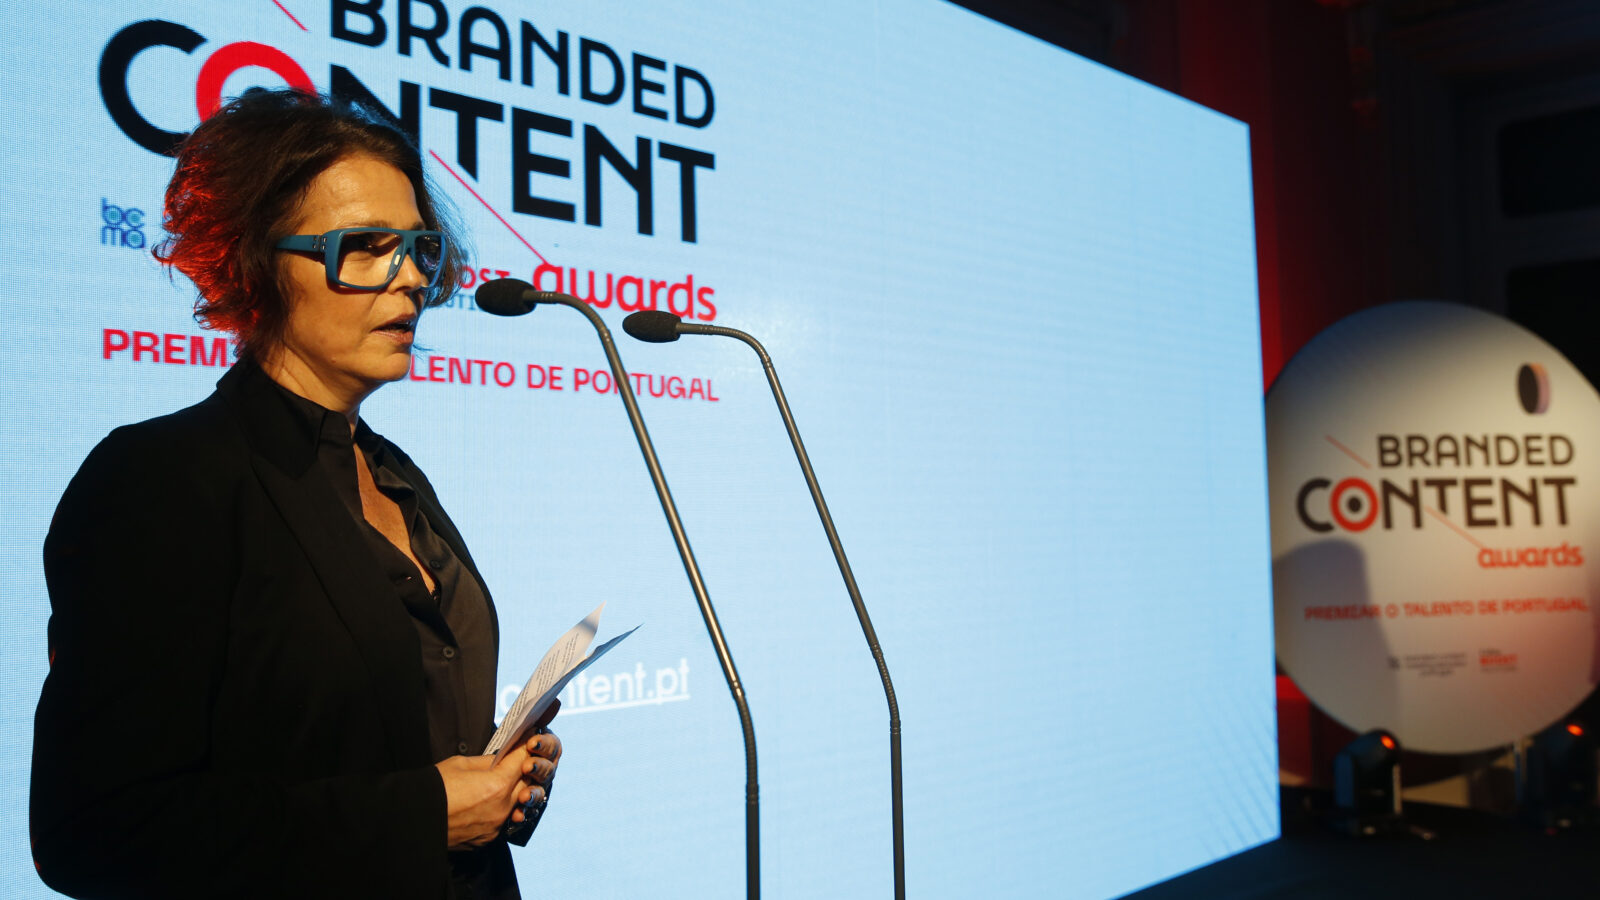 Uzina foi a agência mais premiada nos Branded Content Awards